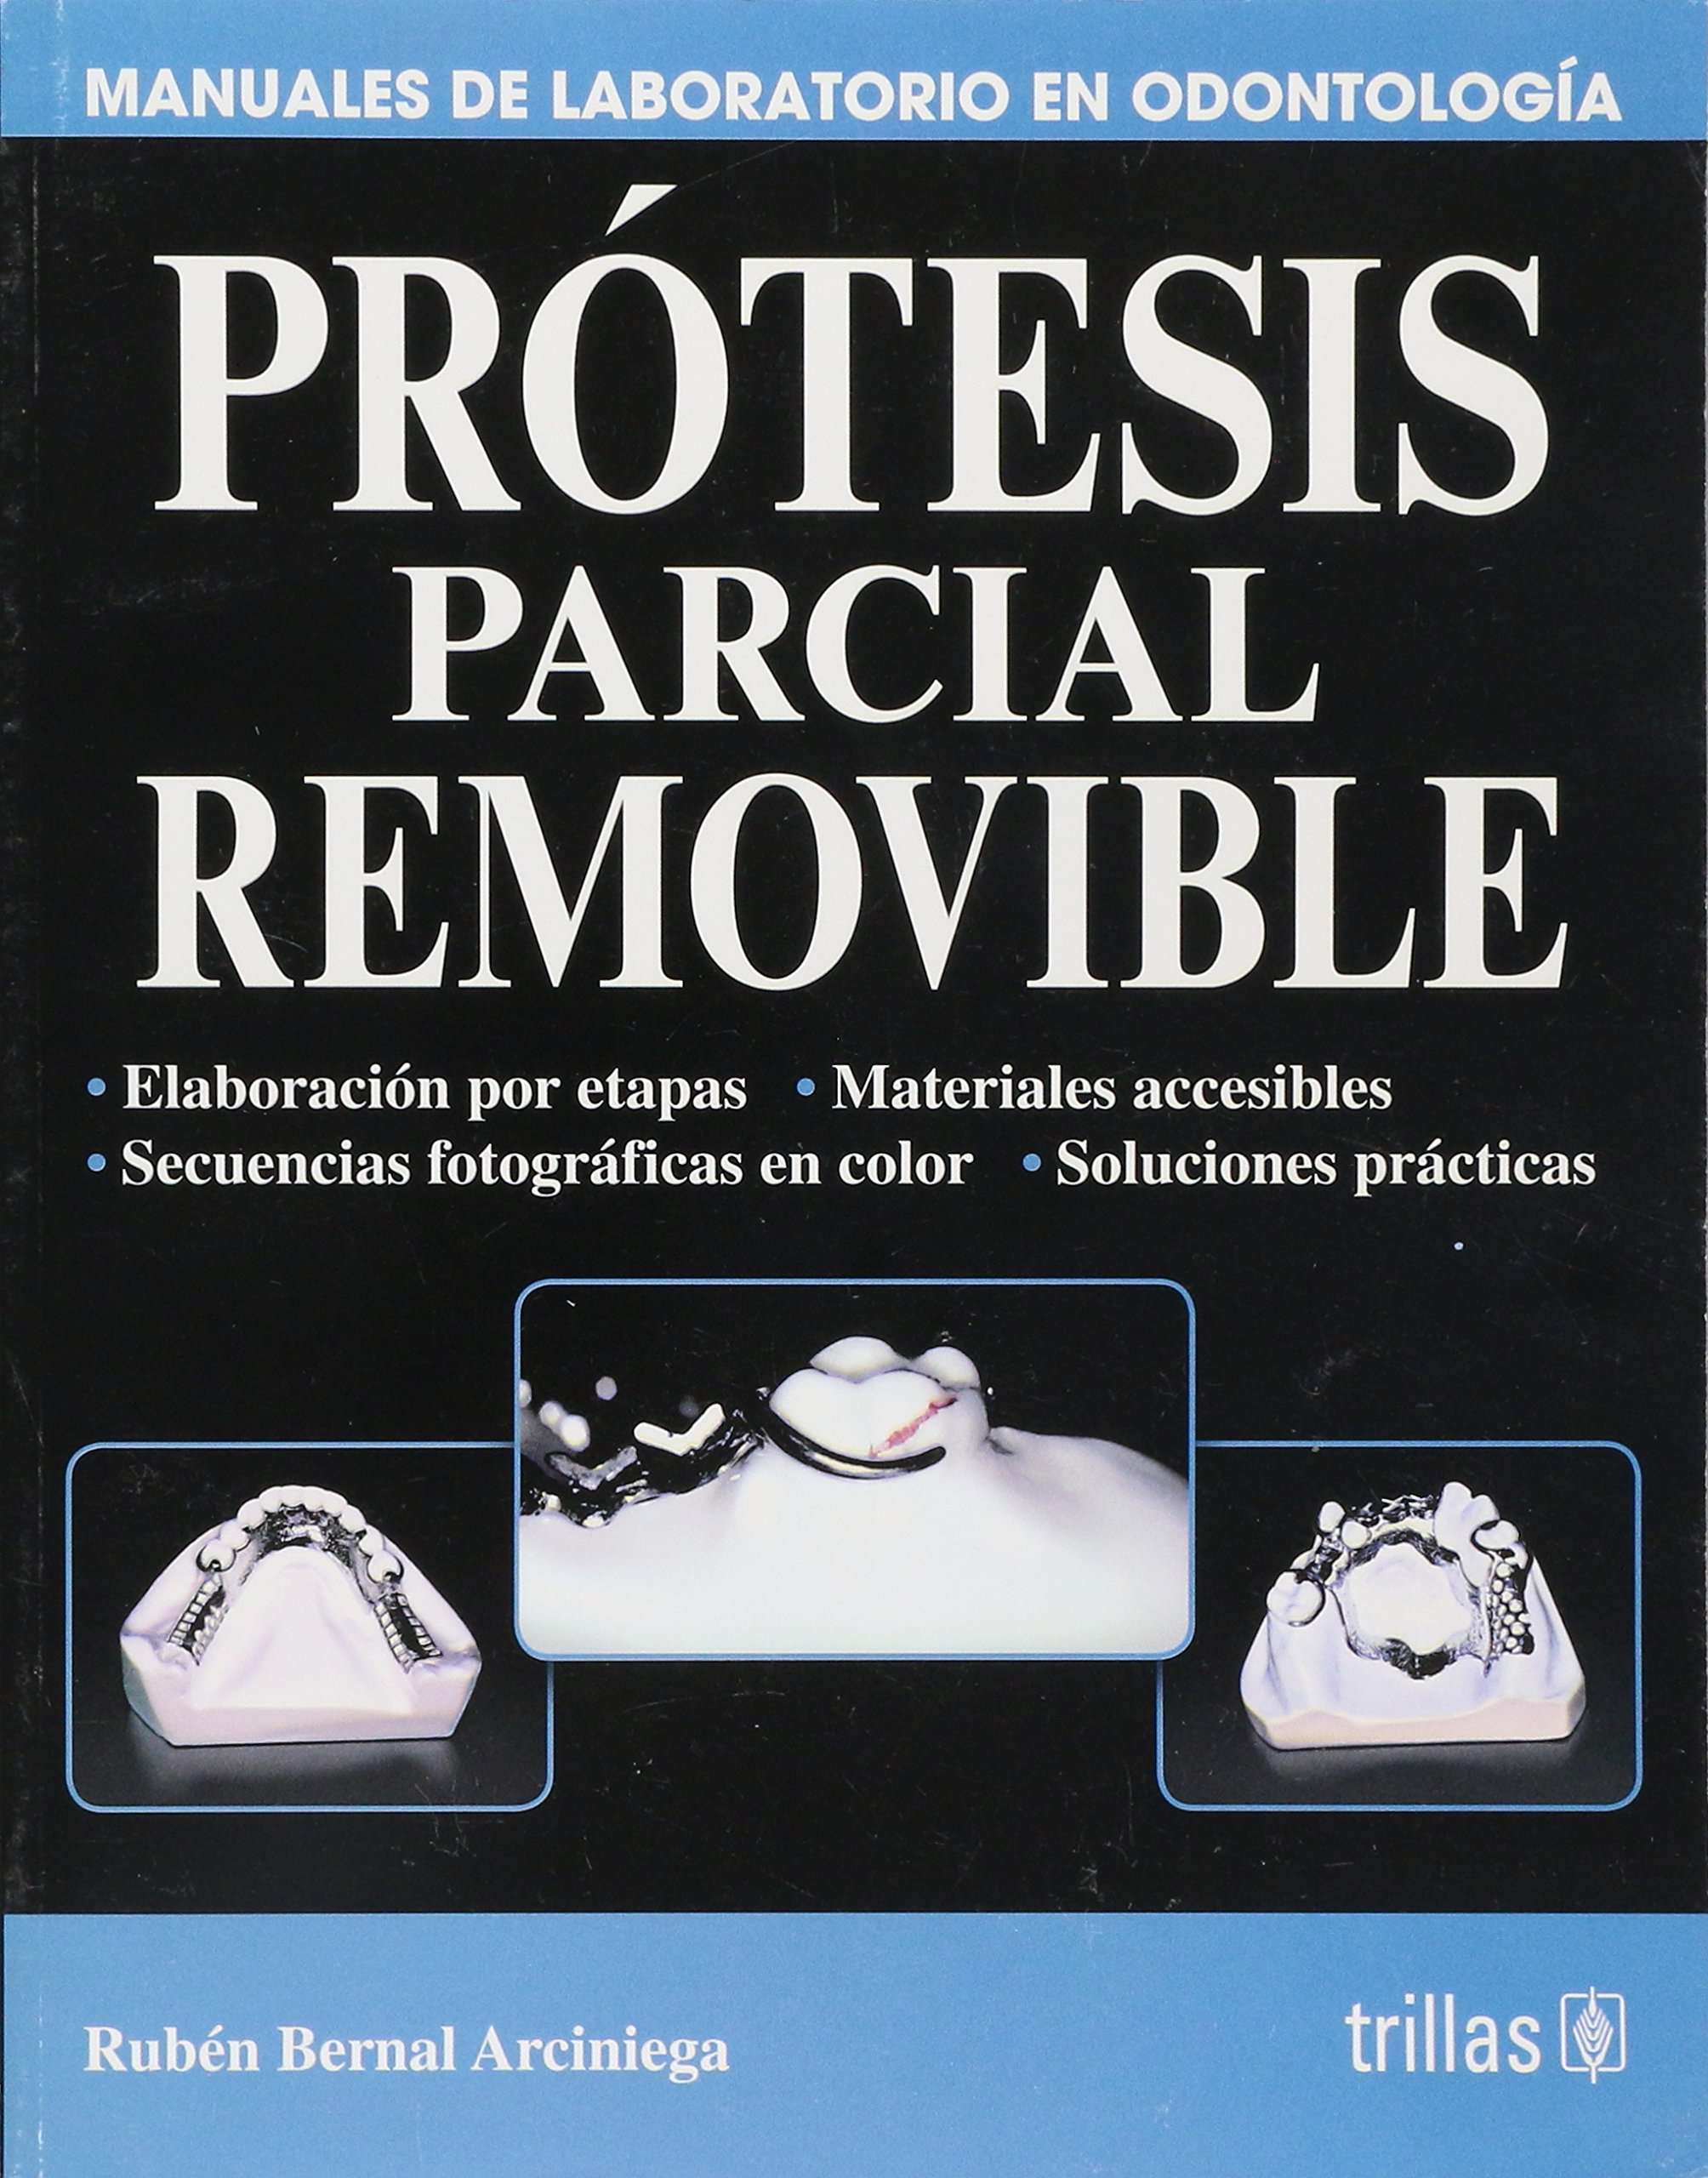 Libro Impreso- Prótesis Parcial Removible Manual de Libratorio en Odontología